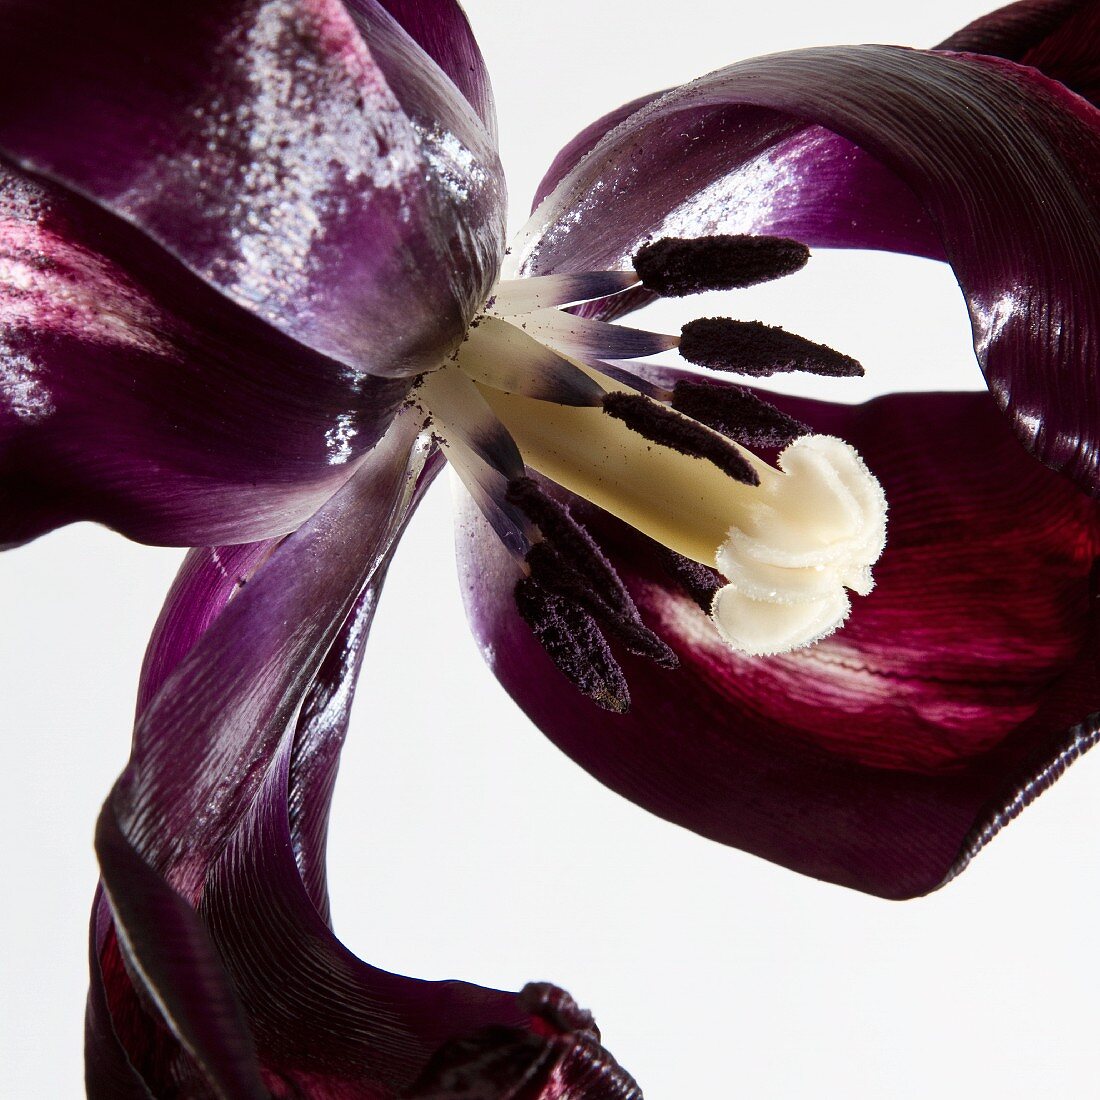 An overblown tulip